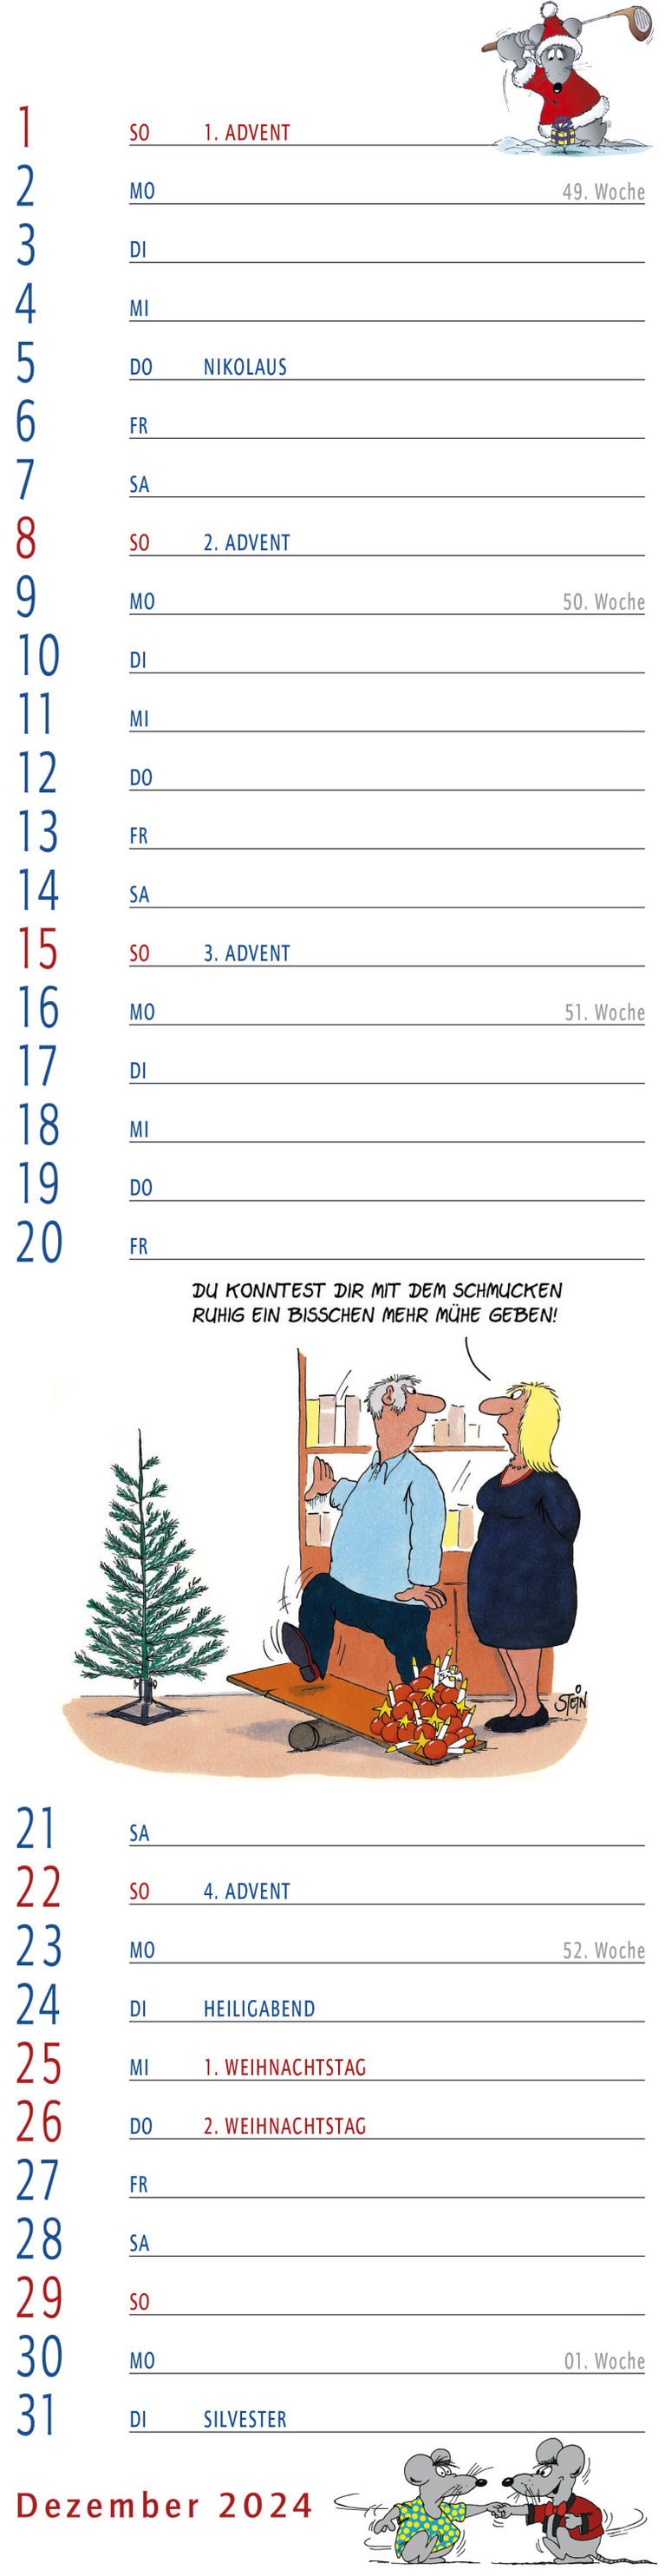 Uli Stein Streifenkalender 2024 - Kalender bei Weltbild.de kaufen